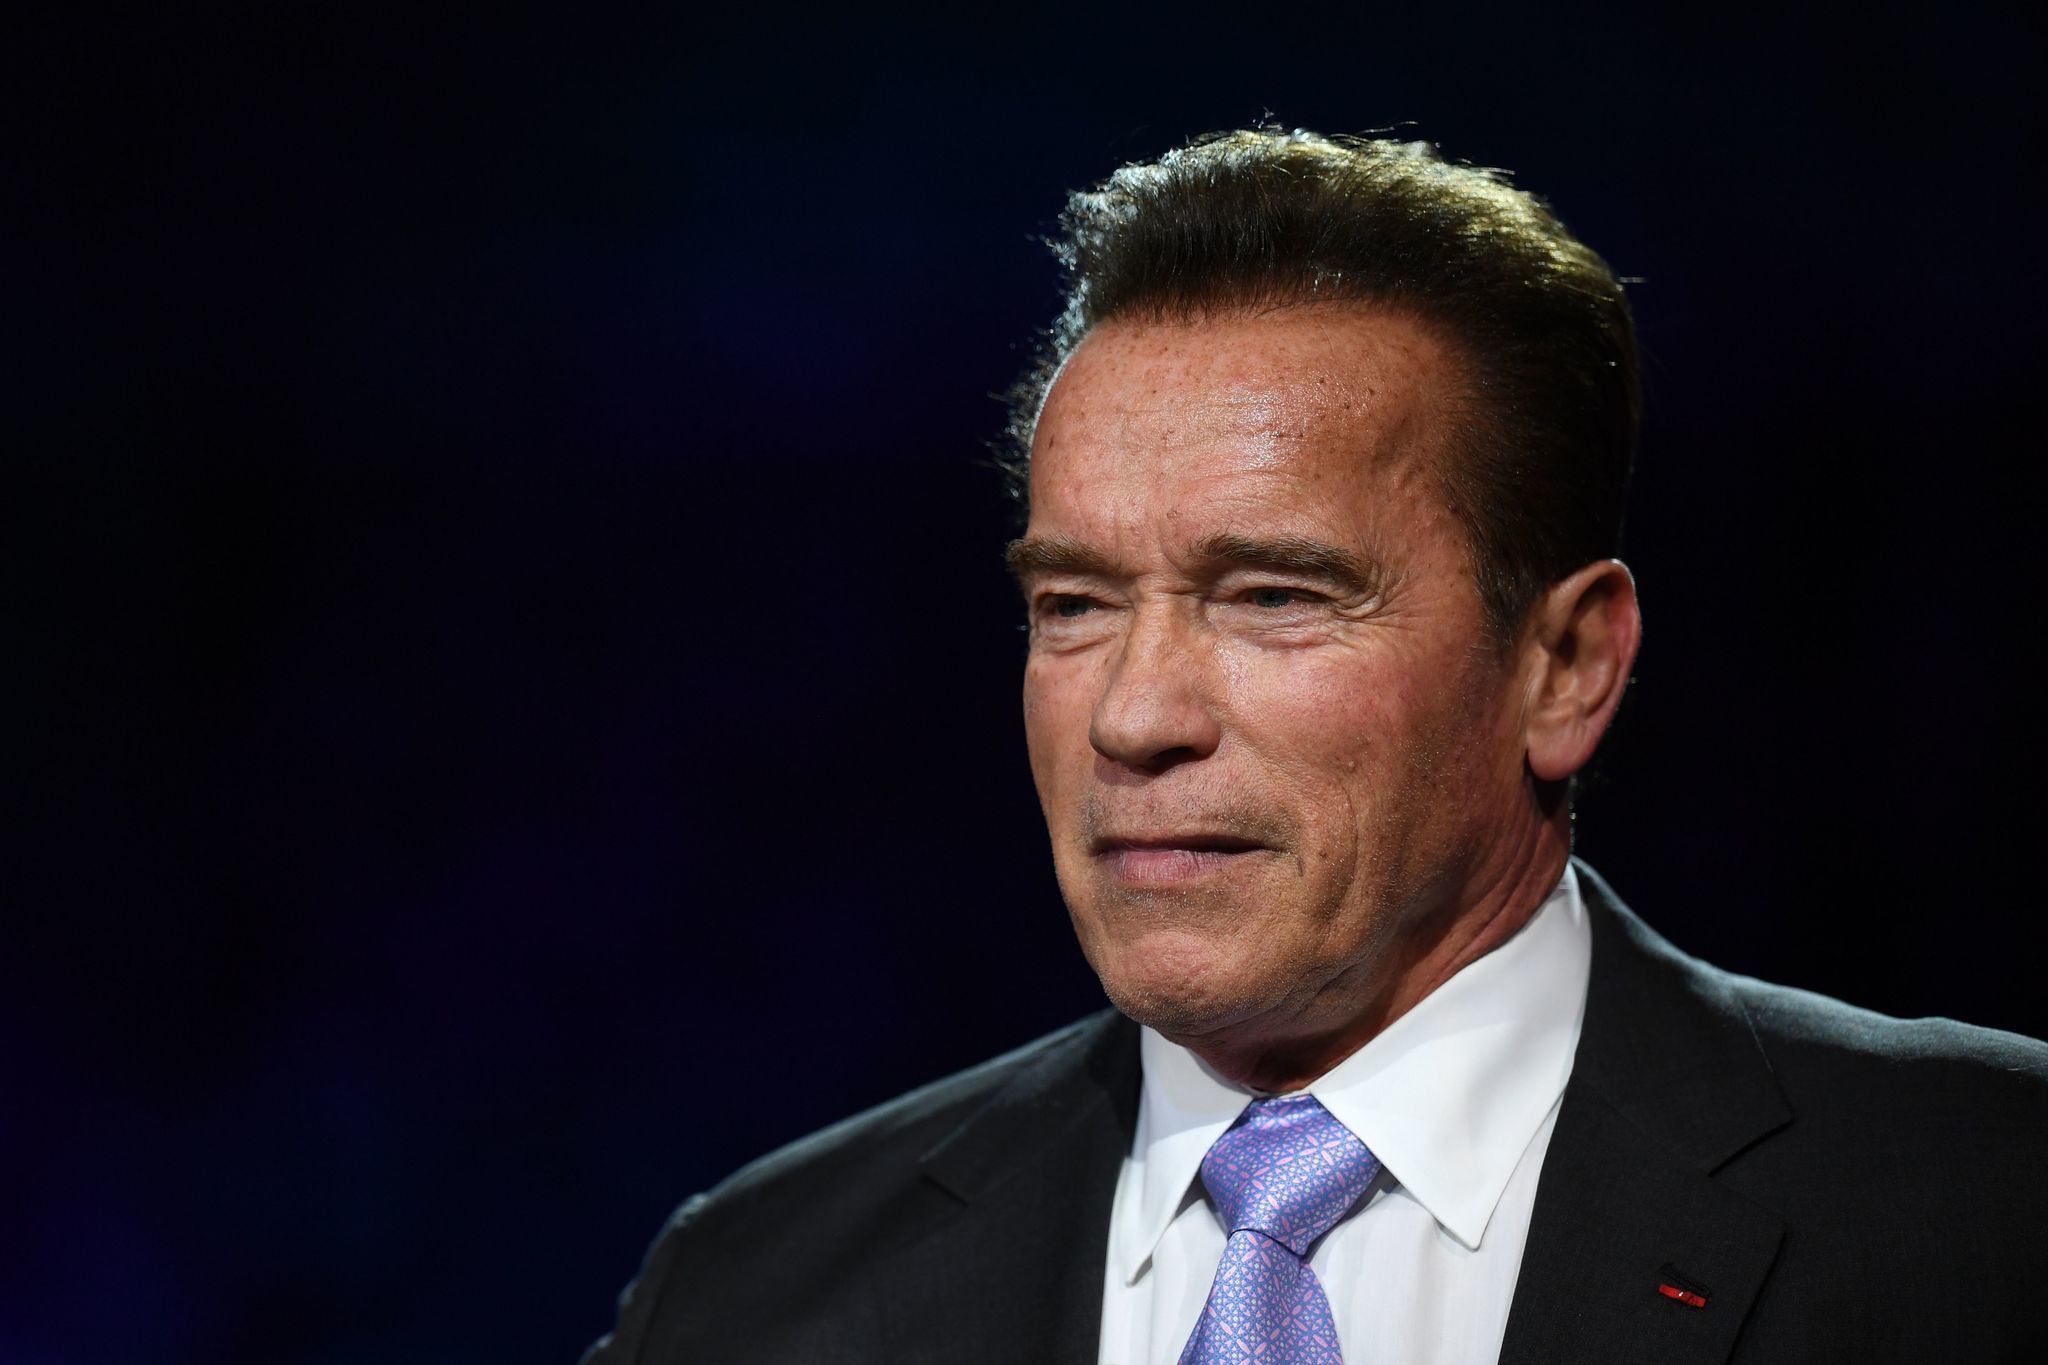 Arnold Schwarzenegger in 'good spirits' after heart ...